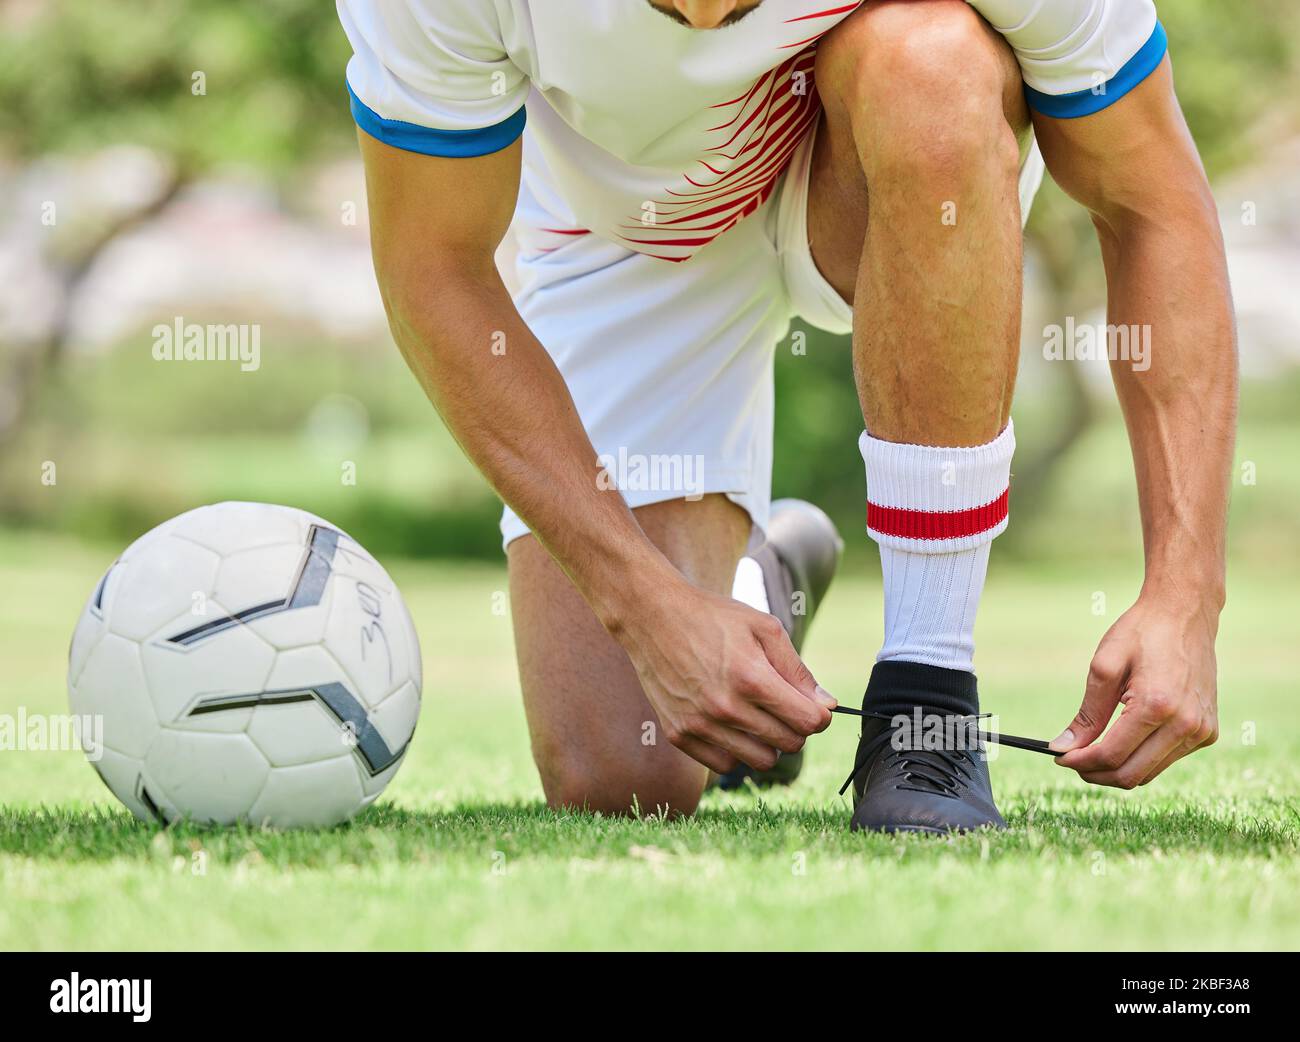 Sport-, Fußball- und Männer-Krawattenschuh auf dem Spielfeld, bereit für Spiel, Spiel und Outdoor-Training. Fitness-, Bewegungs- und Fußballspieler binden Schuhe auf Sneaker Stockfoto